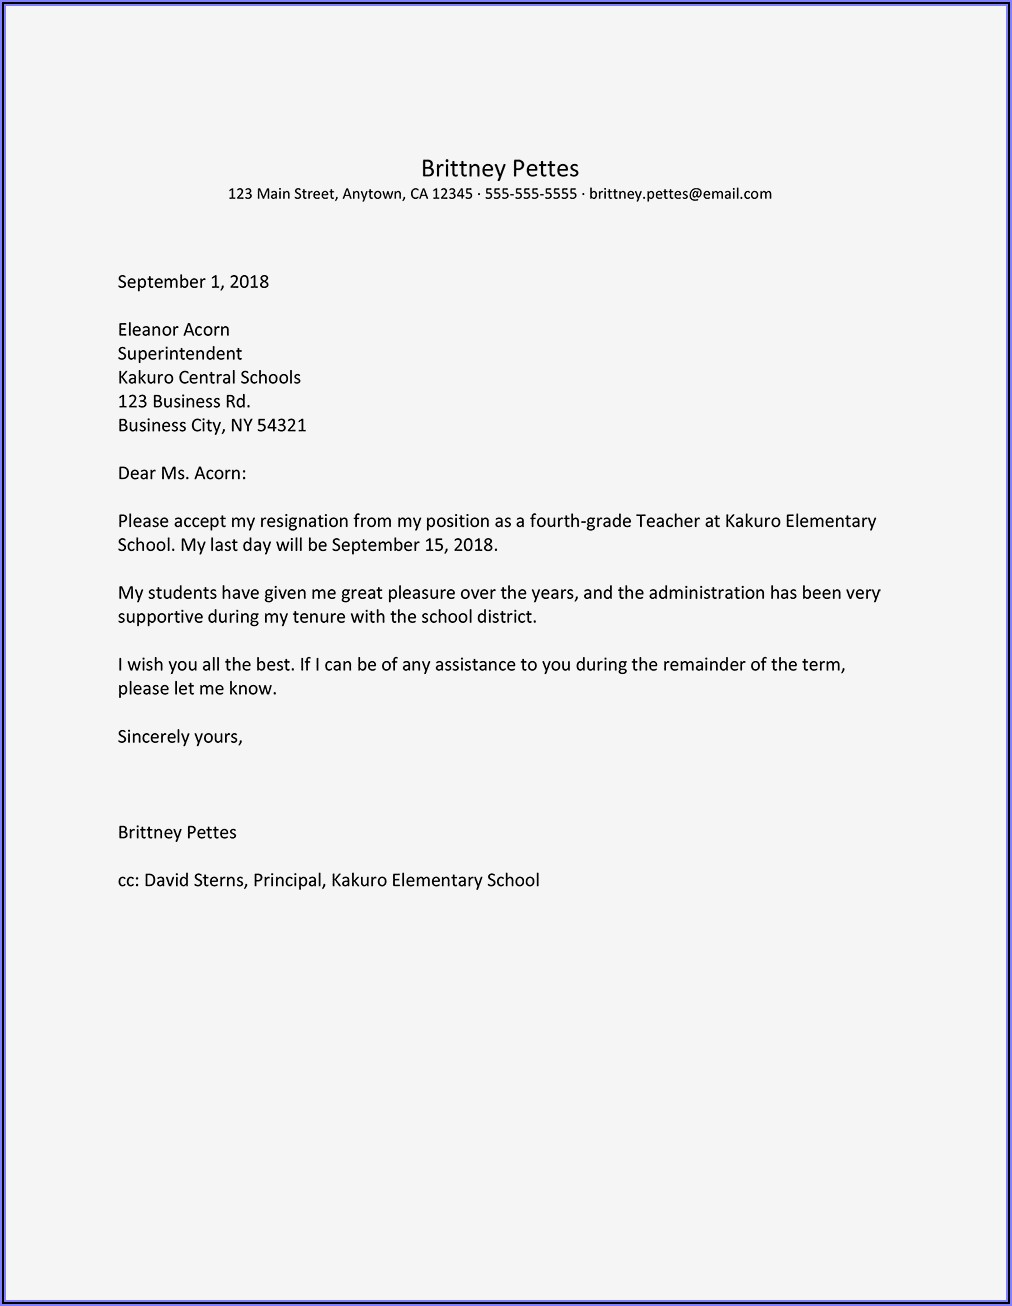 Samples Of Resignation Letter For Teachers